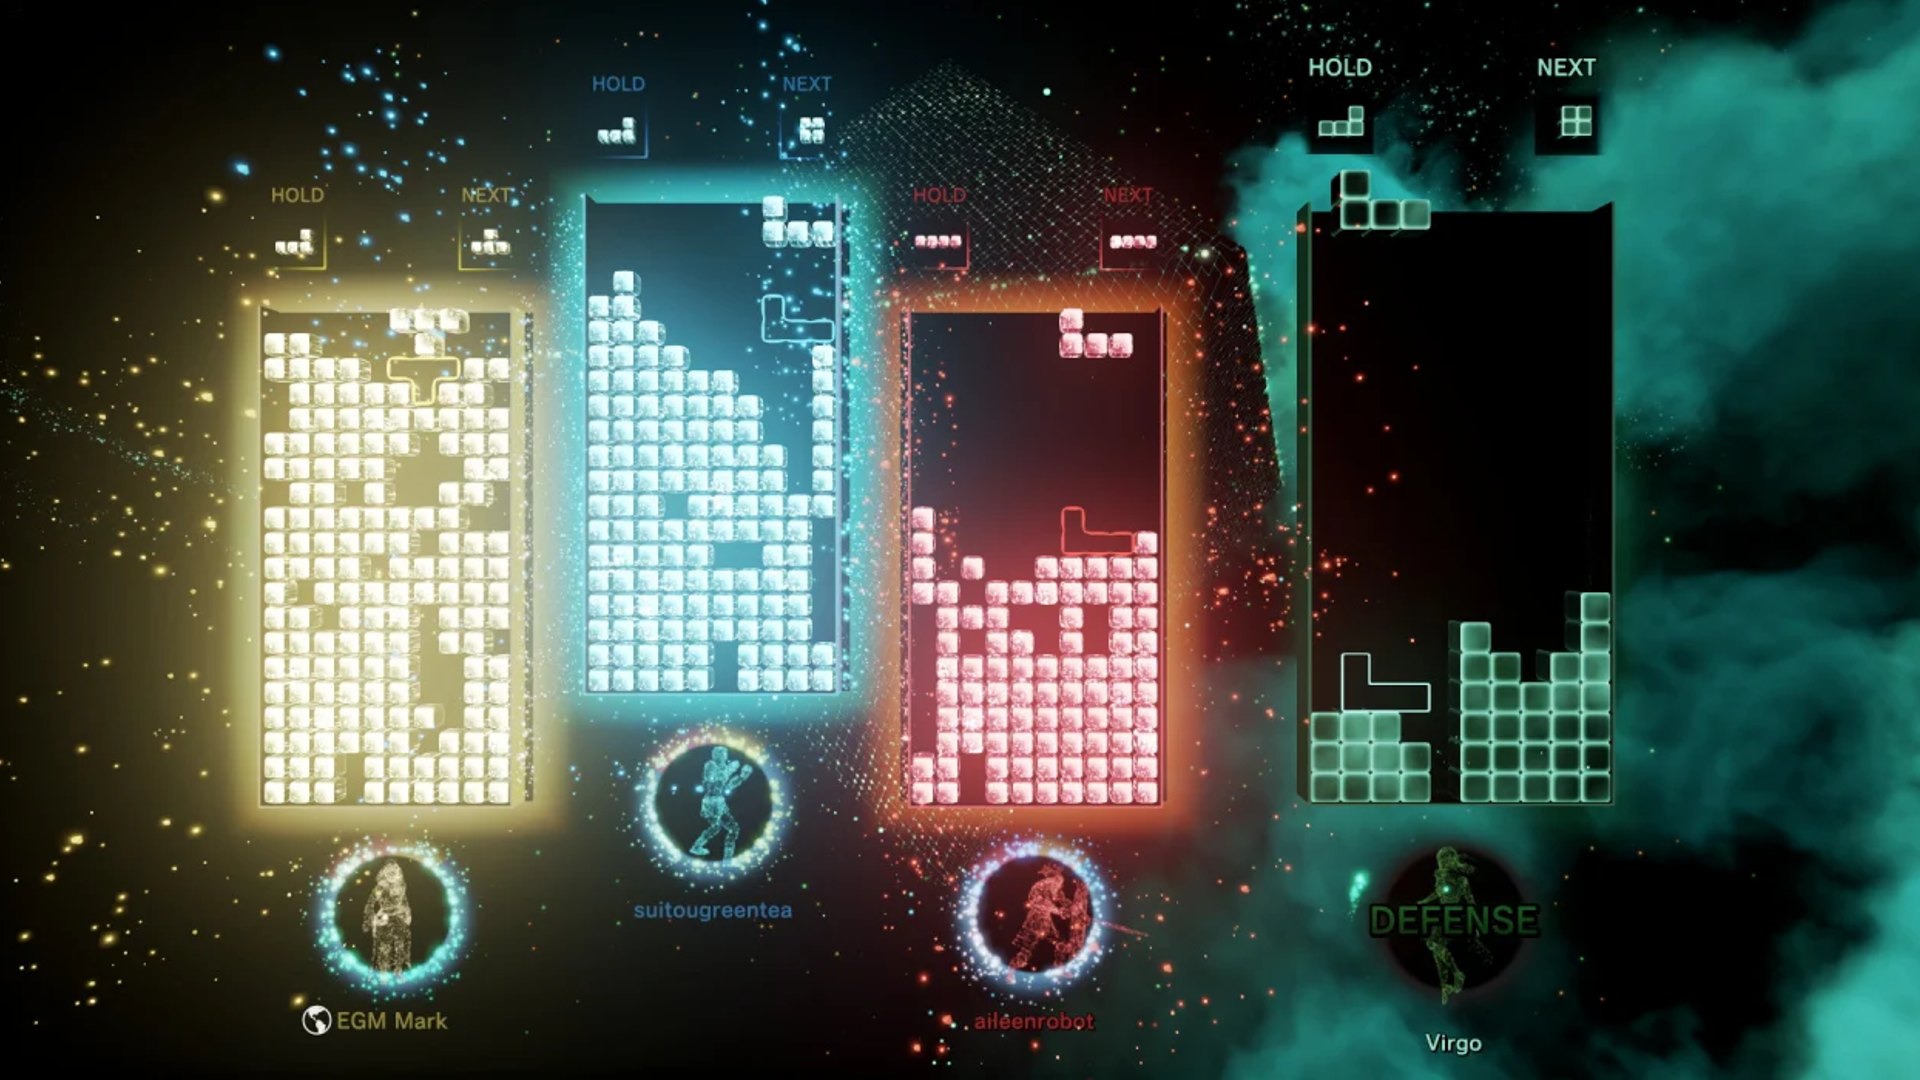 Best Games: A Tetris Effect multiplayer match can be seen